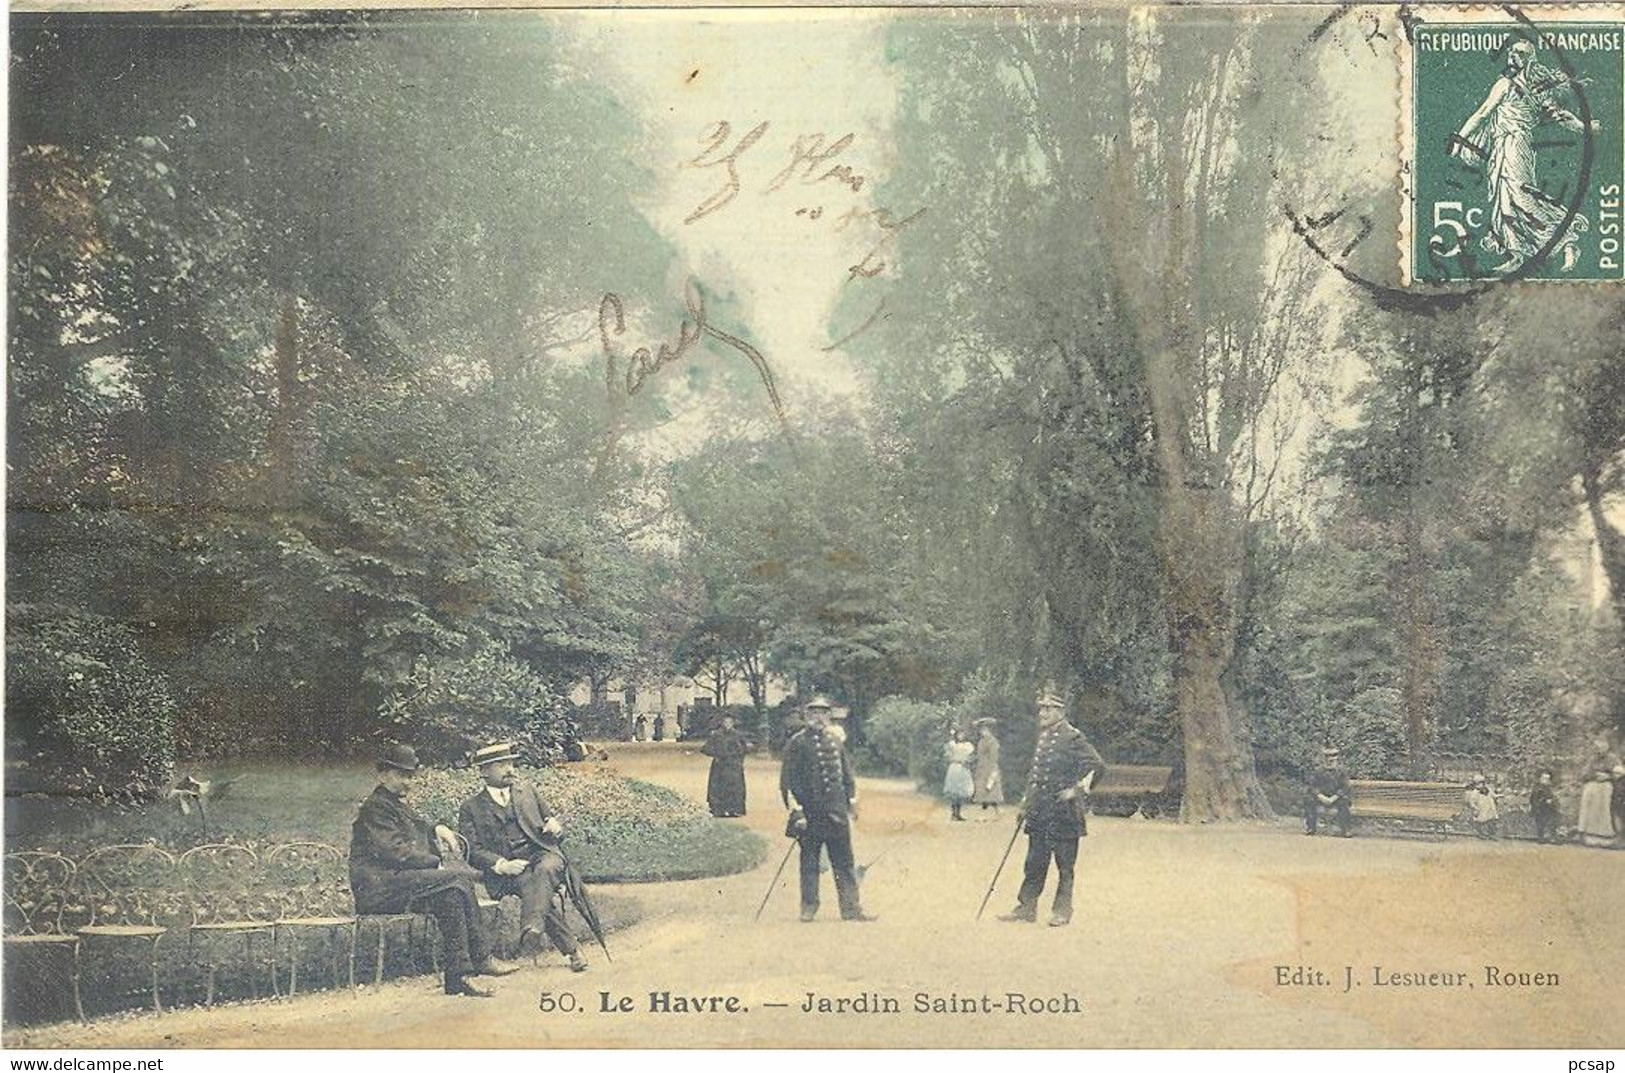 Le Havre - Jardin Saint-Roch - Square Saint-Roch